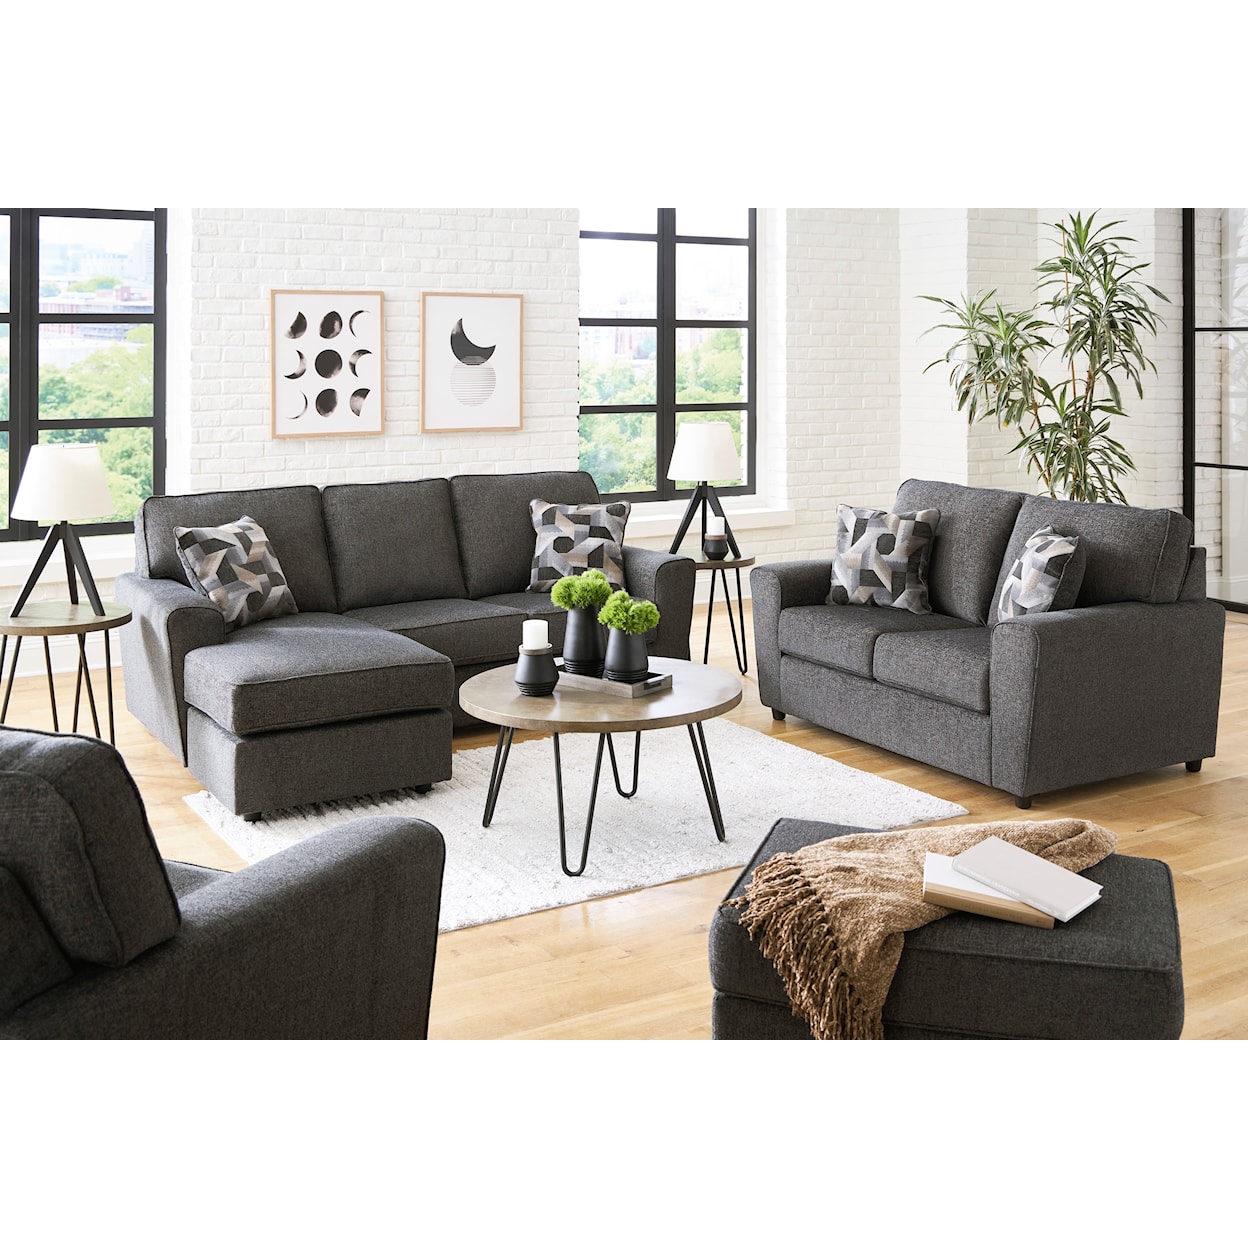 Benchcraft Cascilla Living Room Set